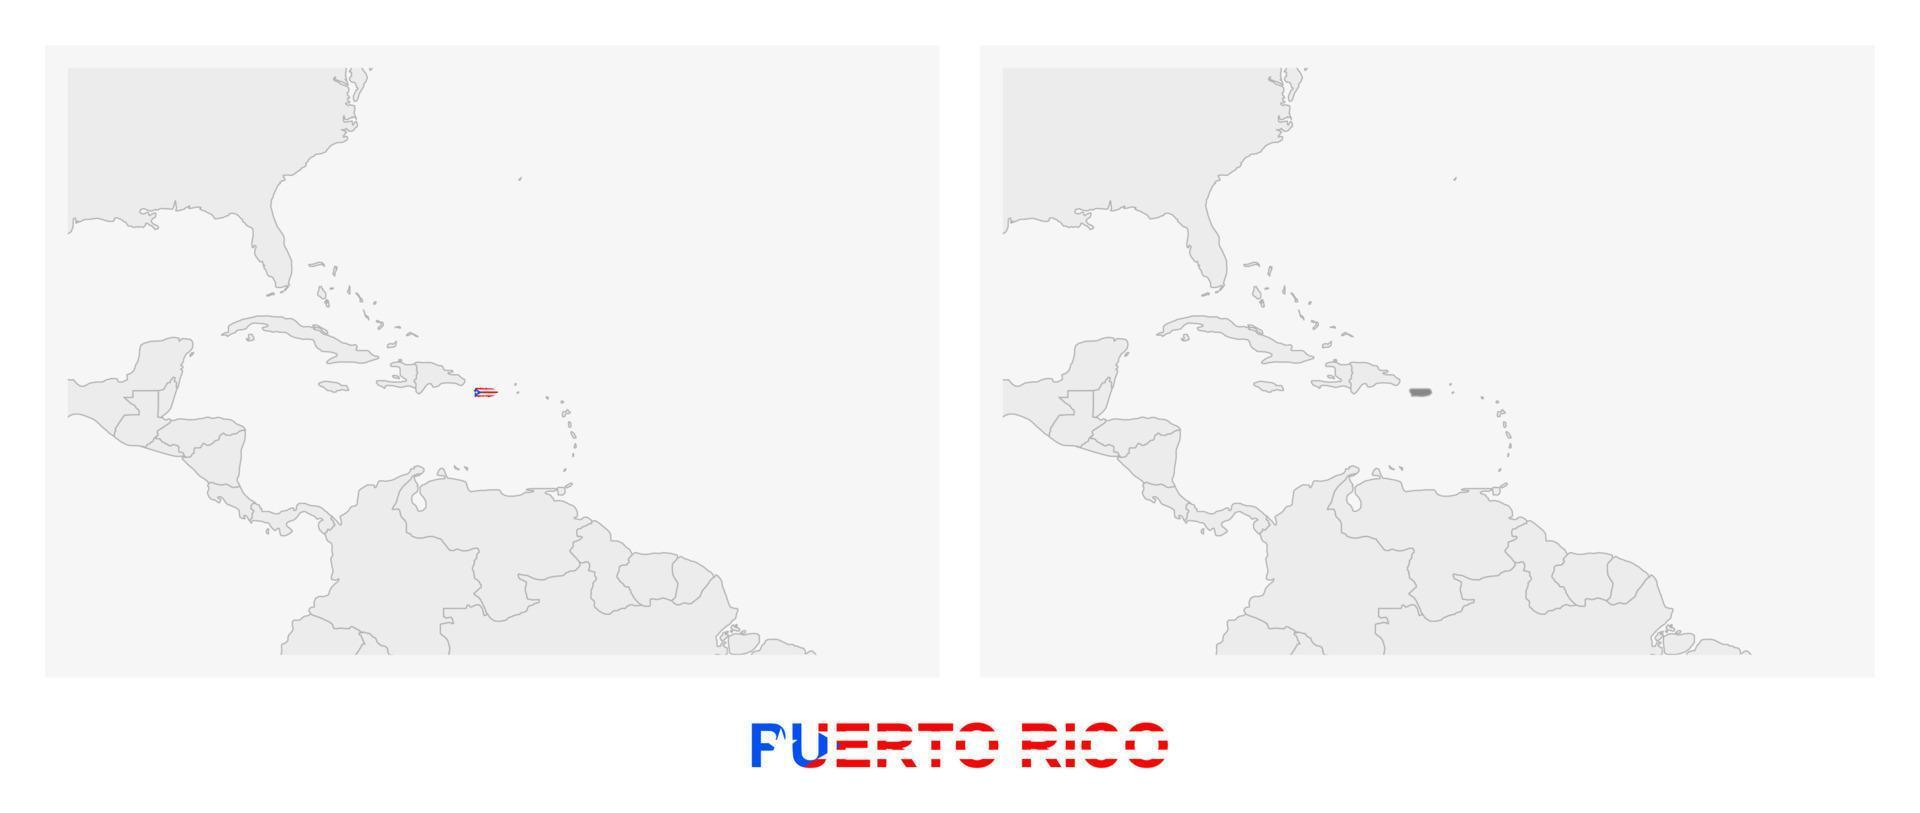 dos versiones del mapa de puerto rico, con la bandera de puerto rico y resaltada en gris oscuro. vector